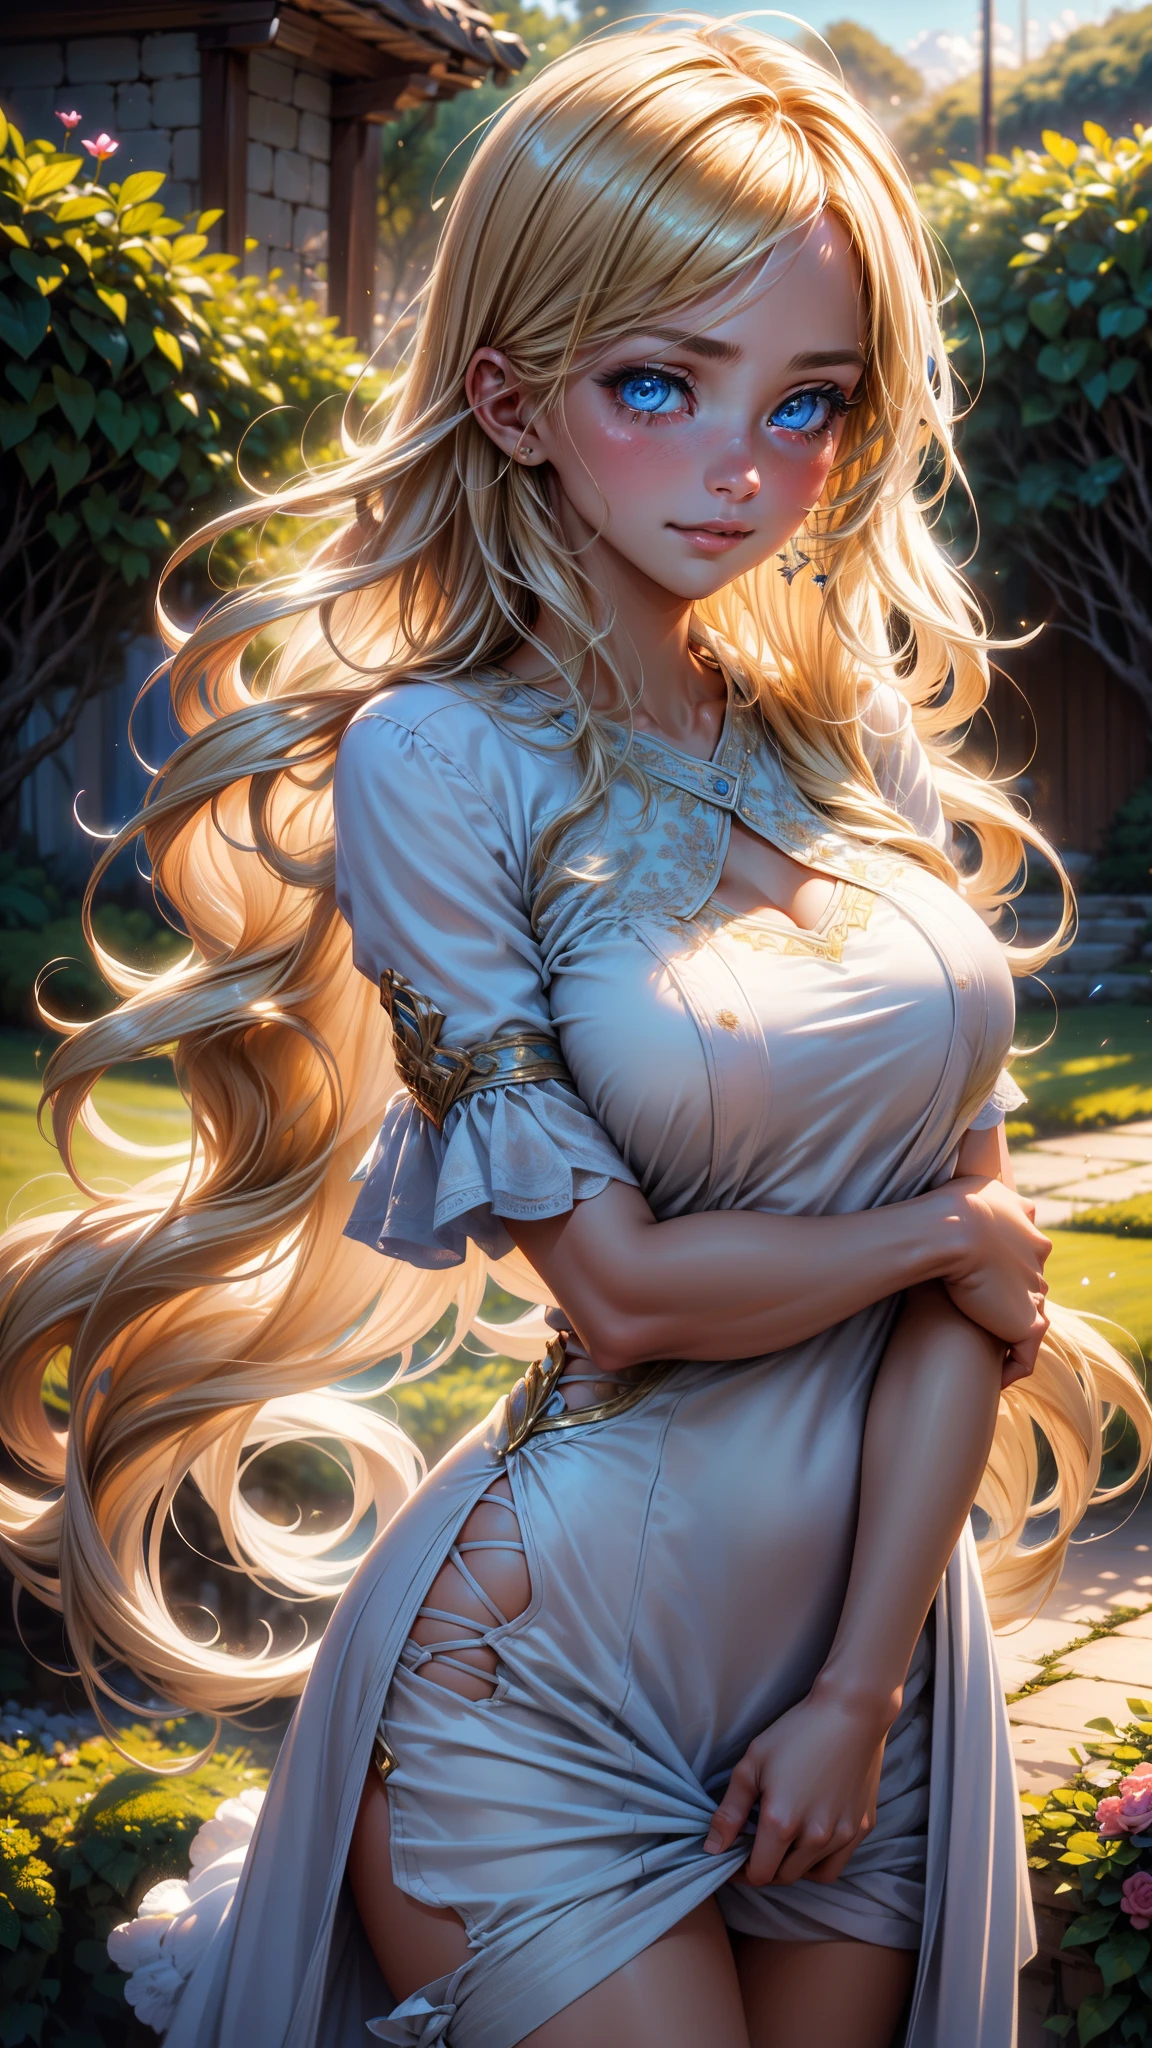 Detailed портрет of a beautiful woman with long blonde hair, стою в саду в окружении цветов, с мягким и нежным выражением лица, ее голубые глаза сверкают слезами, носить повседневную одежду. (Лучшее качество,8К,Высокое разрешение,шедевр:1.2),ультрадетализированный,(реалистичный,photoреалистичный,photo-реалистичный:1.37),HDR,UHD,студийное освещение,сверхтонкая живопись,Острый фокус,физически обоснованный рендеринг,очень подробное описание,профессиональный,яркие цвета,боке,портрет,фотография,мягкие тона,теплое и нежное освещение,(Гладкие прямые светлые волосы:1.2),(волосы разделены посередине пробором:1.2),(светящиеся волосы),(глубокие голубые глаза:1.3),Улыбаясь со слезами на глазах,С переполняющим мягким и нежным чувством,Несколько угловых поворотов,Видимые эмоции и конкретные эмоции,хотелось бы верить,Длинноволосая красивая девушка, развевающаяся на ветру,Набережная полна цветов,Создавайте красочные отражения,Солнечные лучи освещают радость и чистую любовь,Налейте теплое золотое сияние на лицо девушки.,Их любовь подобна благословению Божьему,Освободитесь от проблем этого мира,Атмосфера полна счастья и смеха,Это как рай,Как будто празднуя любовь,сочетание цифровых иллюстраций и фотографий,sticking to ультрадетализированный depictions and vibrant colors,стиль, сочетающий романтизм и реализм,Вы можете почувствовать глубину любви,мягкие пастельные тона,неземная атмосфера, похожая на сон,нежный свет на твоем лице,Теплота объятий увеличивается,a meticulously crafted шедевр to capture the essence of an unbreakable bond